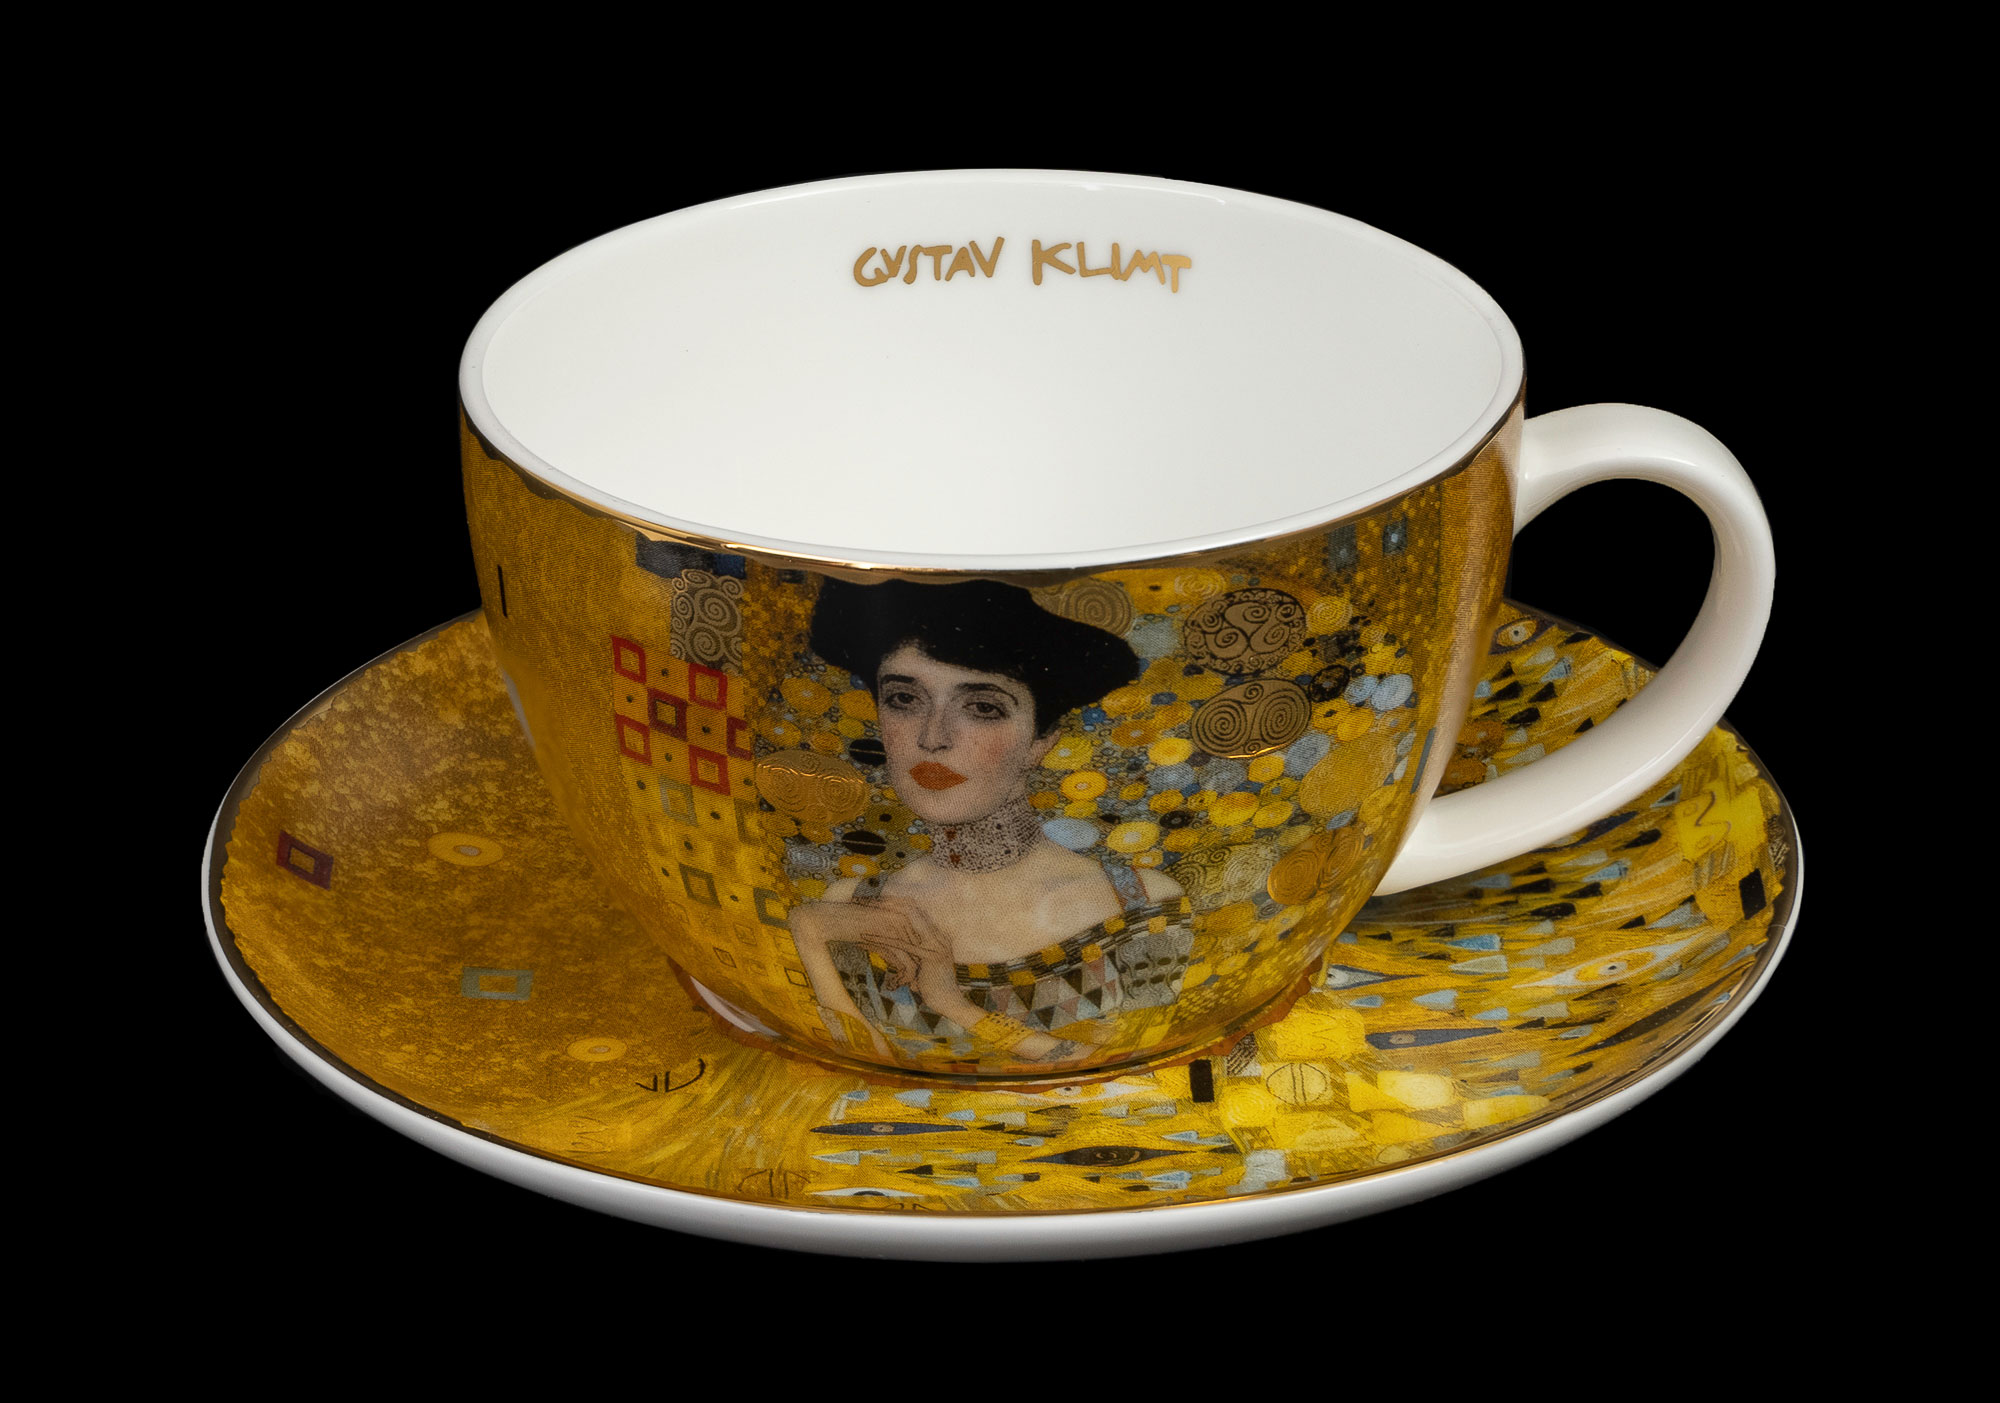 Gustav Klimt Adele Bloch-Bauer Tasse Geschenk Karton 0,45L 1.Wahl Becher Cup 